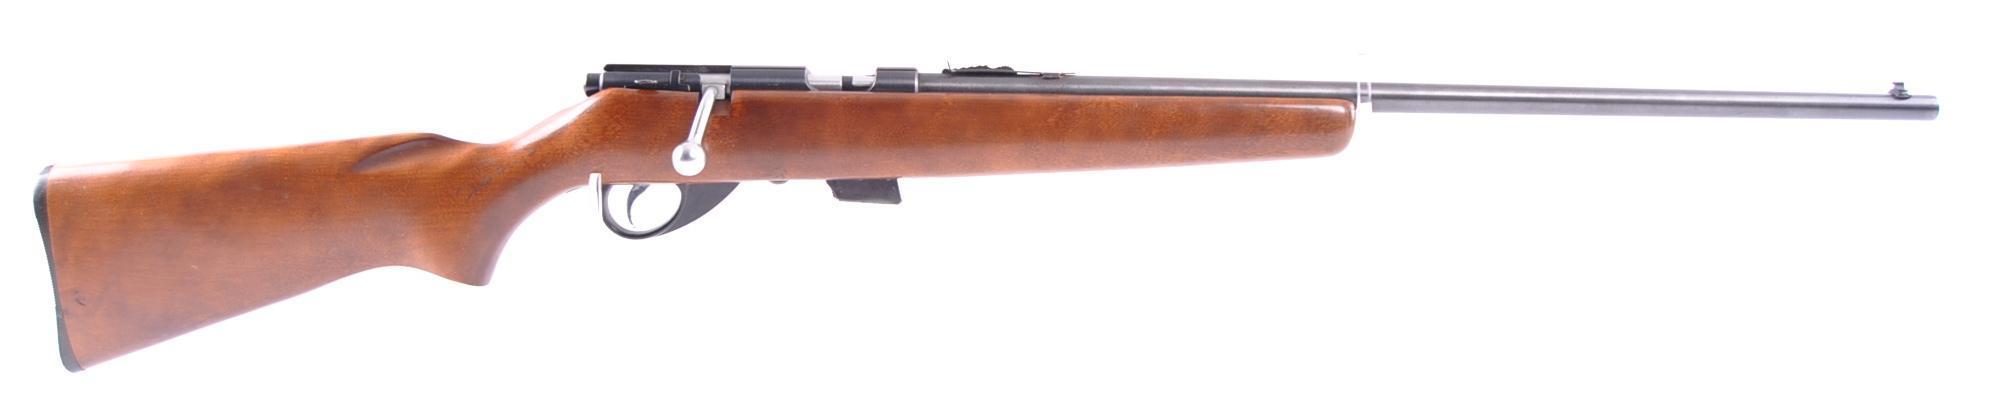 JC Higgins Model 103 .22 S. L. LR. Cal. Bolt Action Rifle